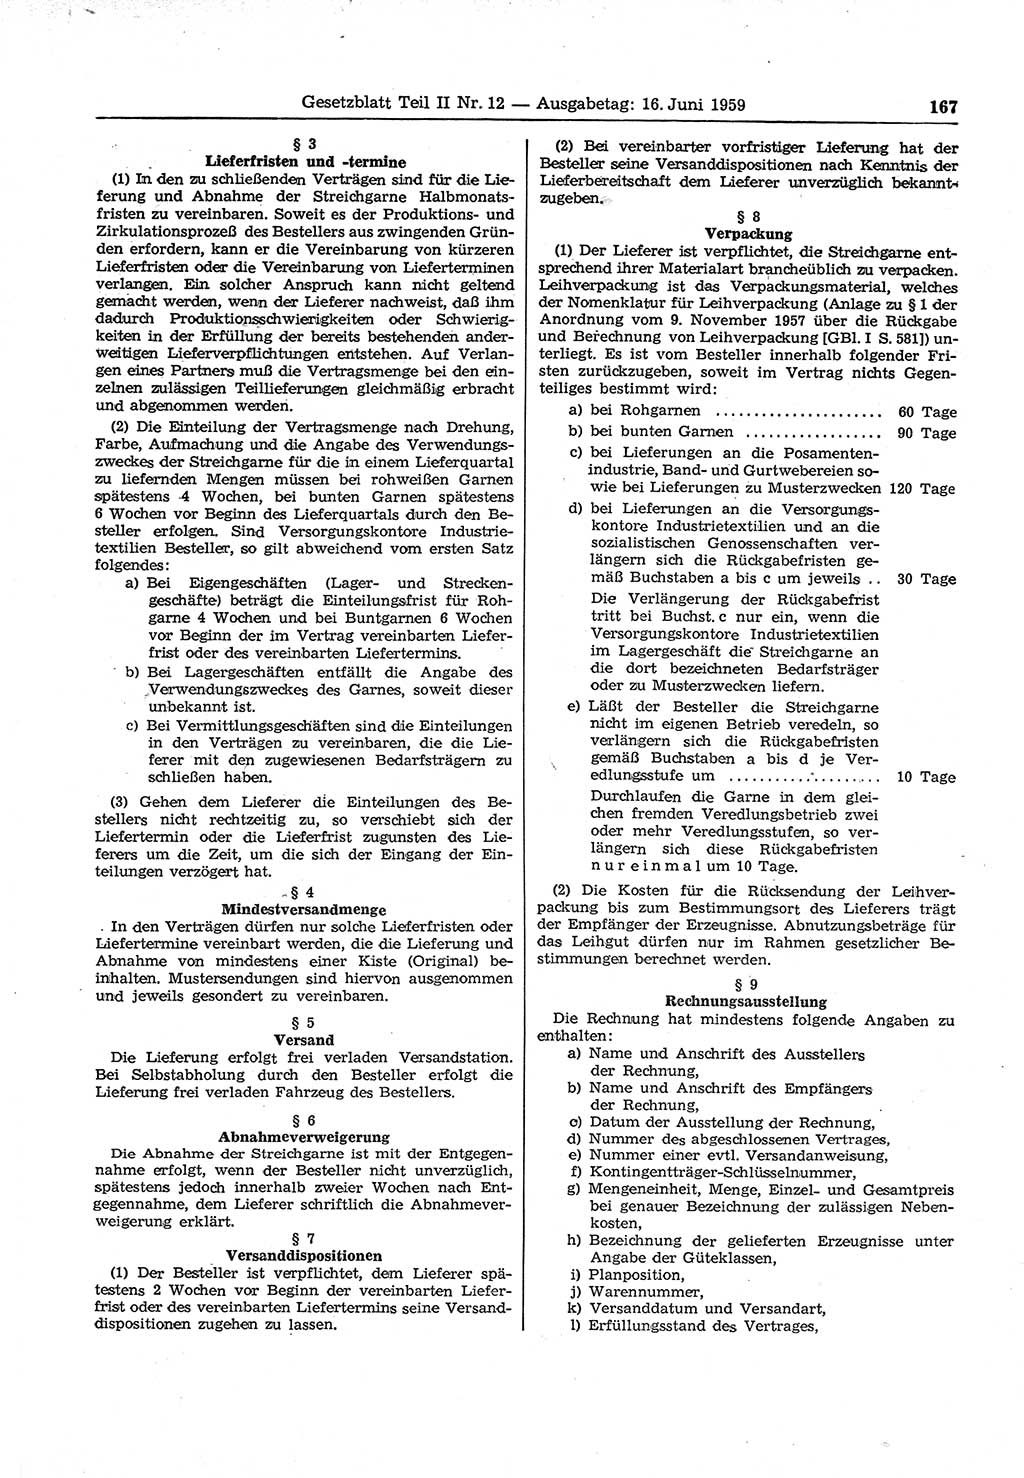 Gesetzblatt (GBl.) der Deutschen Demokratischen Republik (DDR) Teil ⅠⅠ 1959, Seite 167 (GBl. DDR ⅠⅠ 1959, S. 167)